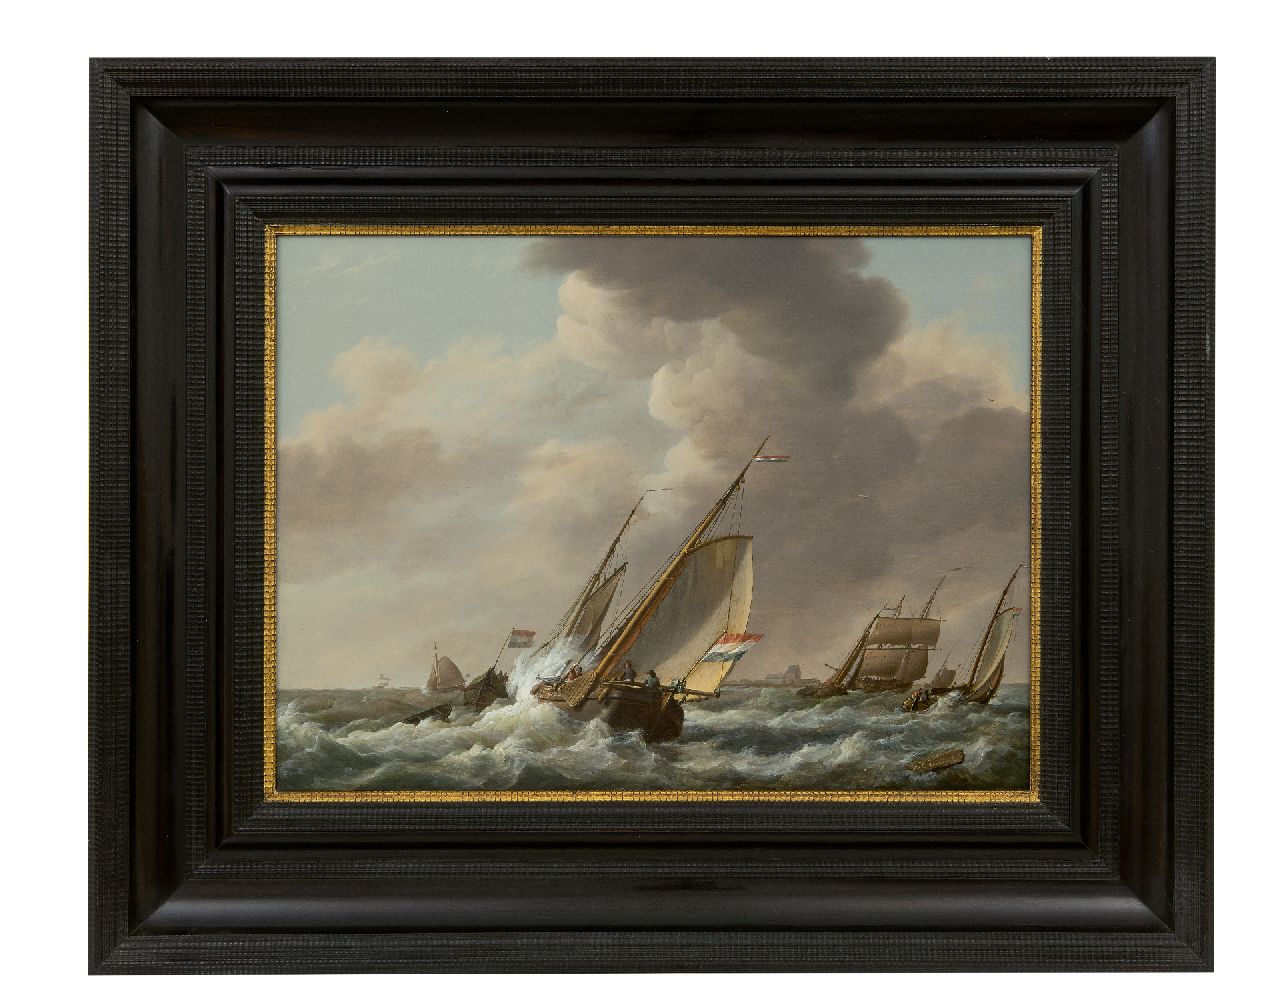 Koekkoek J.H.  | Johannes Hermanus Koekkoek, Laverende schepen in een stevige bries, olieverf op paneel 35,7 x 48,3 cm, gesigneerd rechtsonder